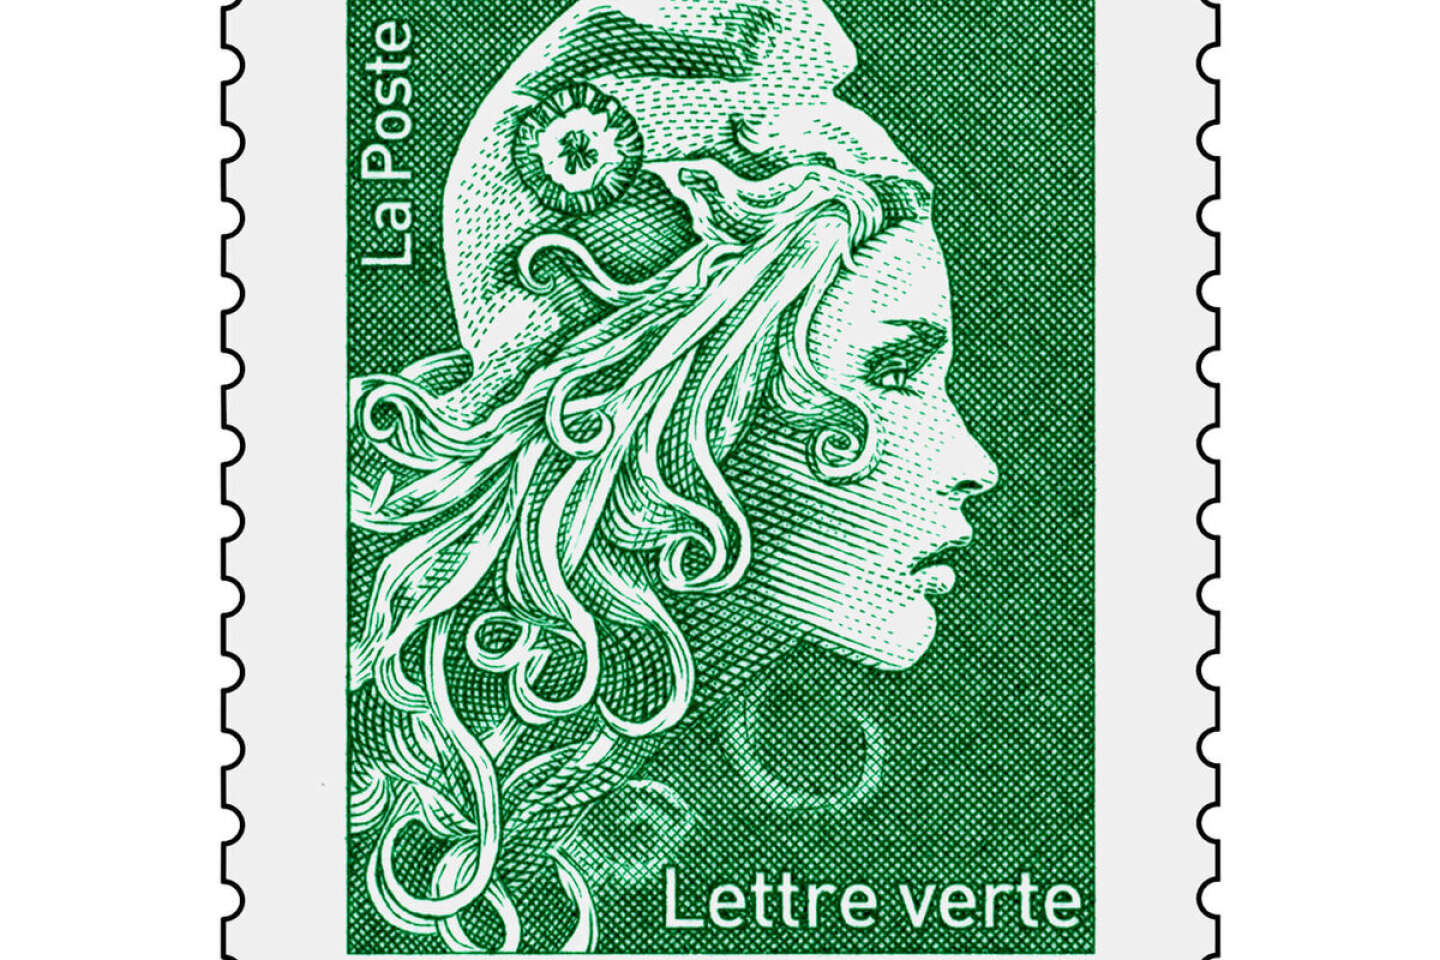 Acheter des timbres en ligne - La Poste